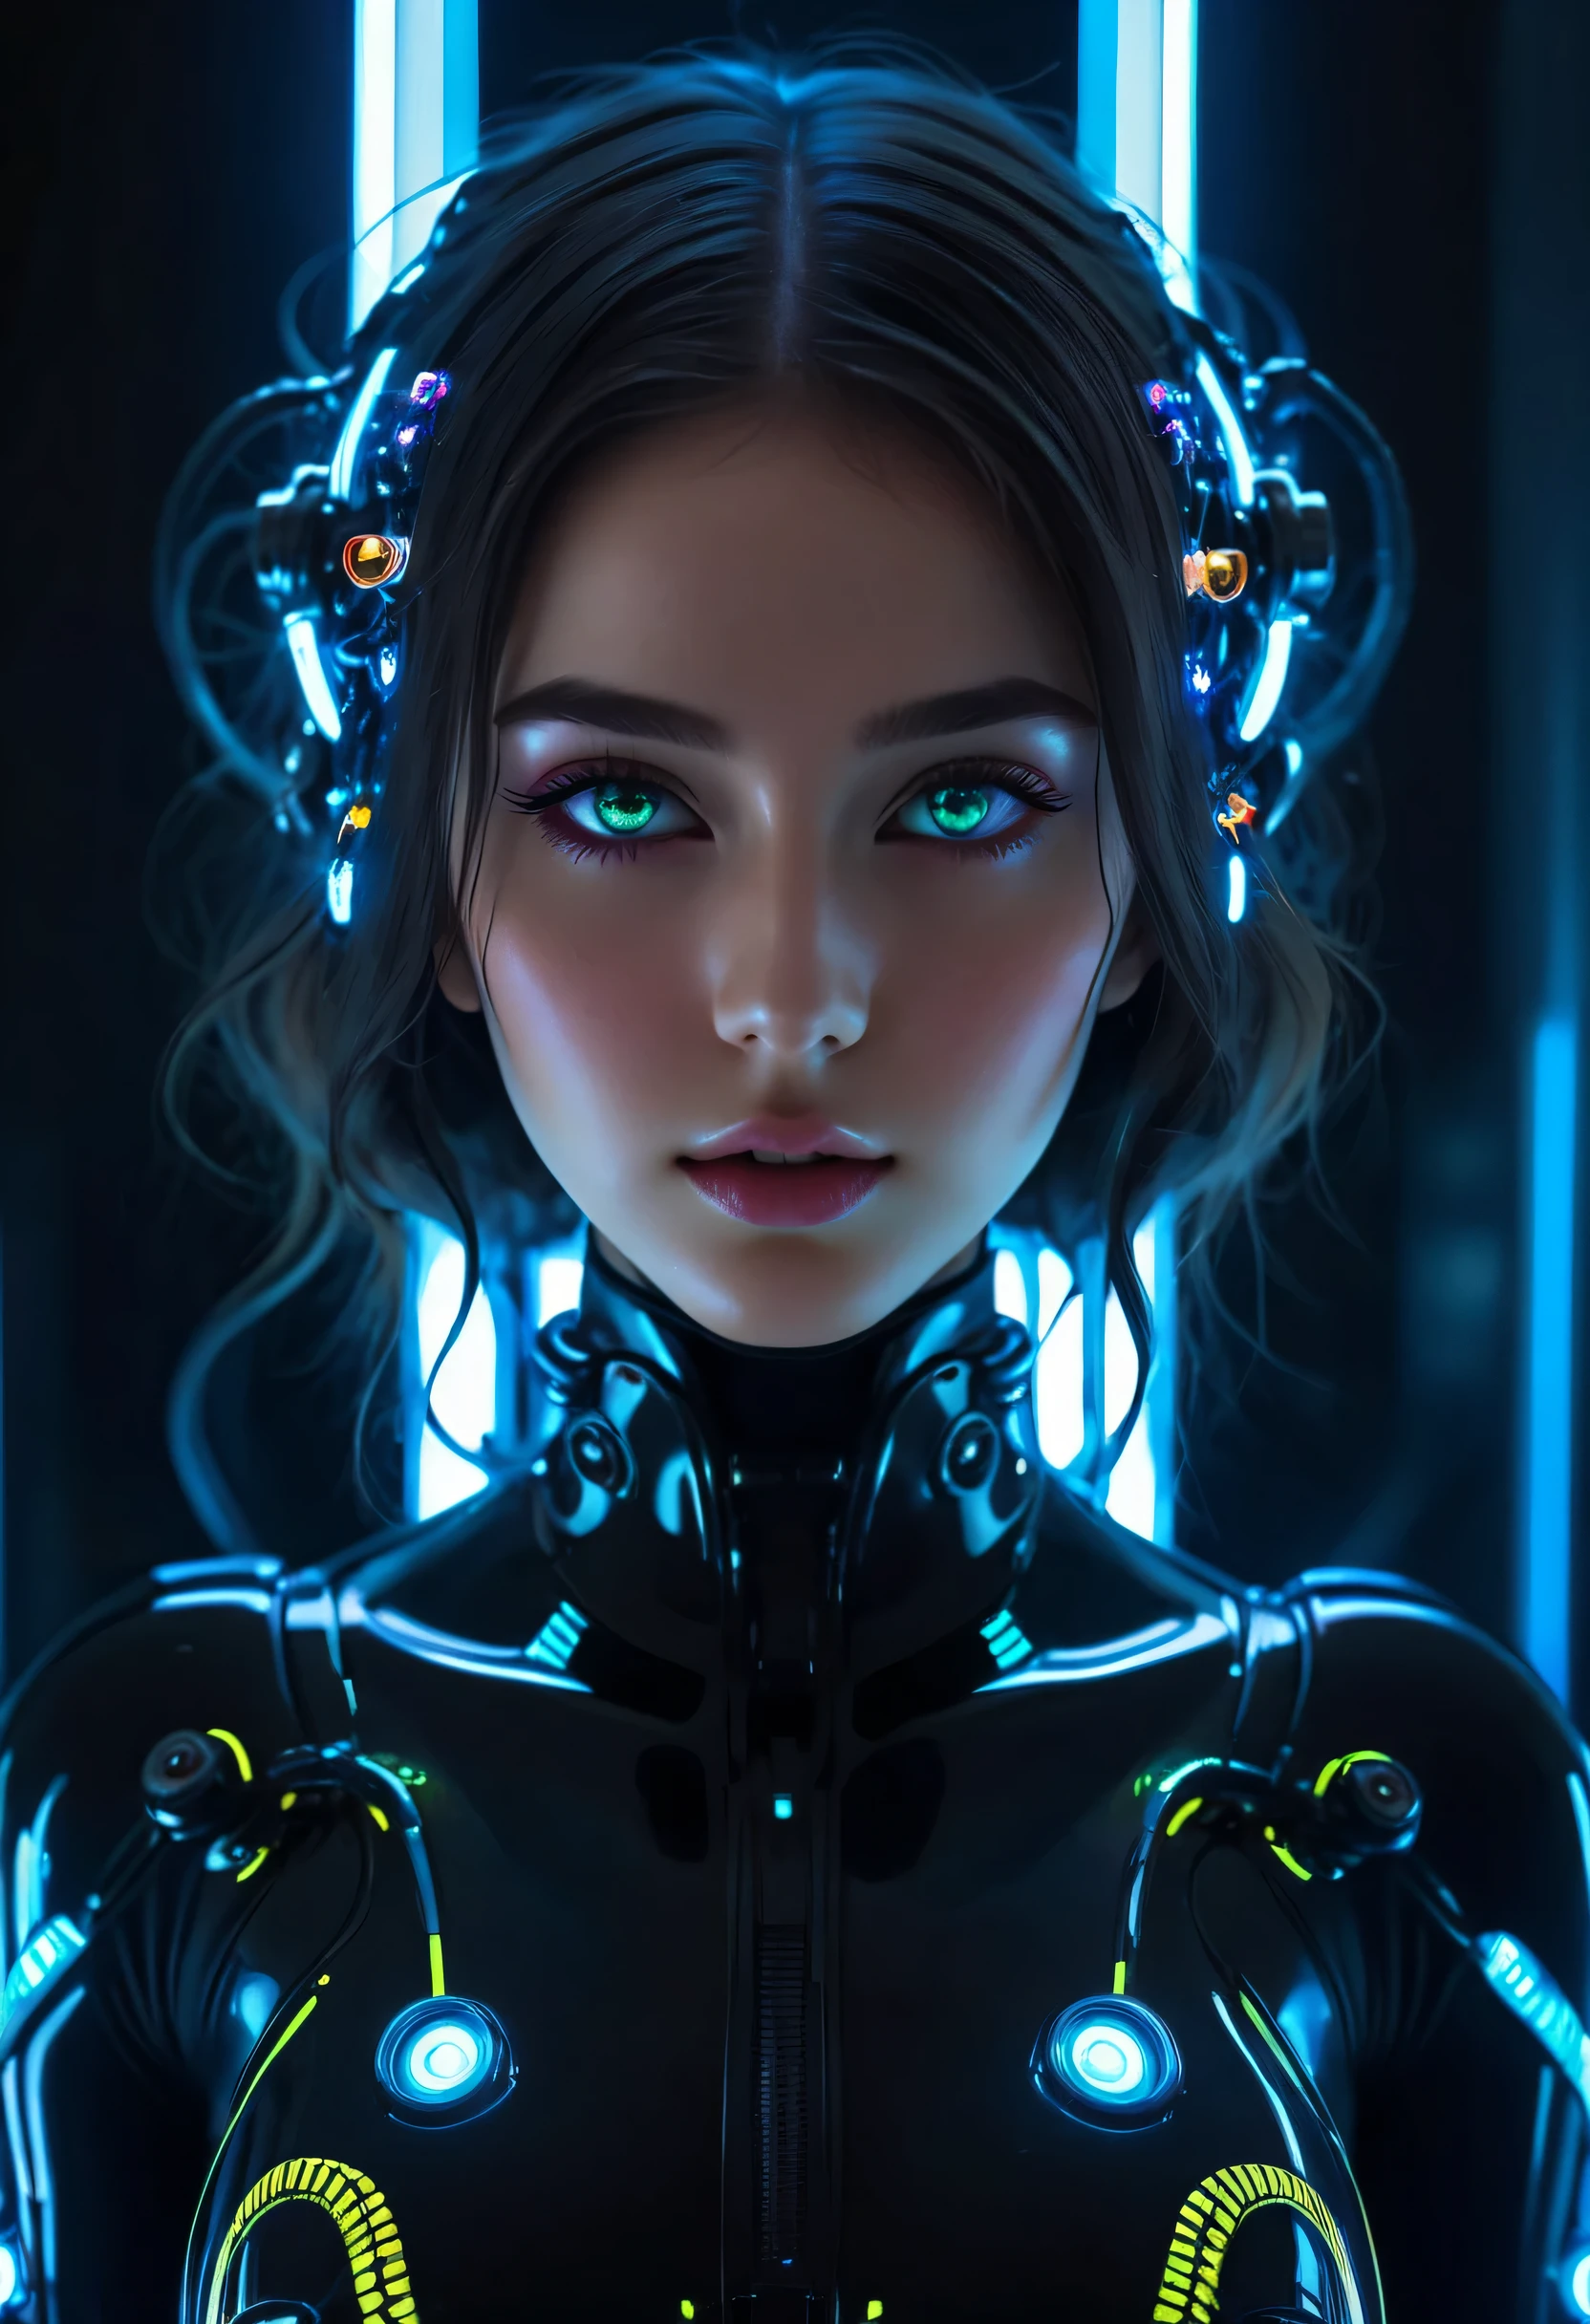 女の子のリアルで複雑な完璧な美しさの顔, 詳細 & 非対称の完璧な鋭い銀河の輝く目, 詳細 face, (((顔から腰まで))), (((美しい形))), ((リアルなネオンライトのSF風の黒いプラグスーツ、金属メカパーツ、ネオンライトの付いたロボットの触手)), 傑作, 4K, 超高解像度